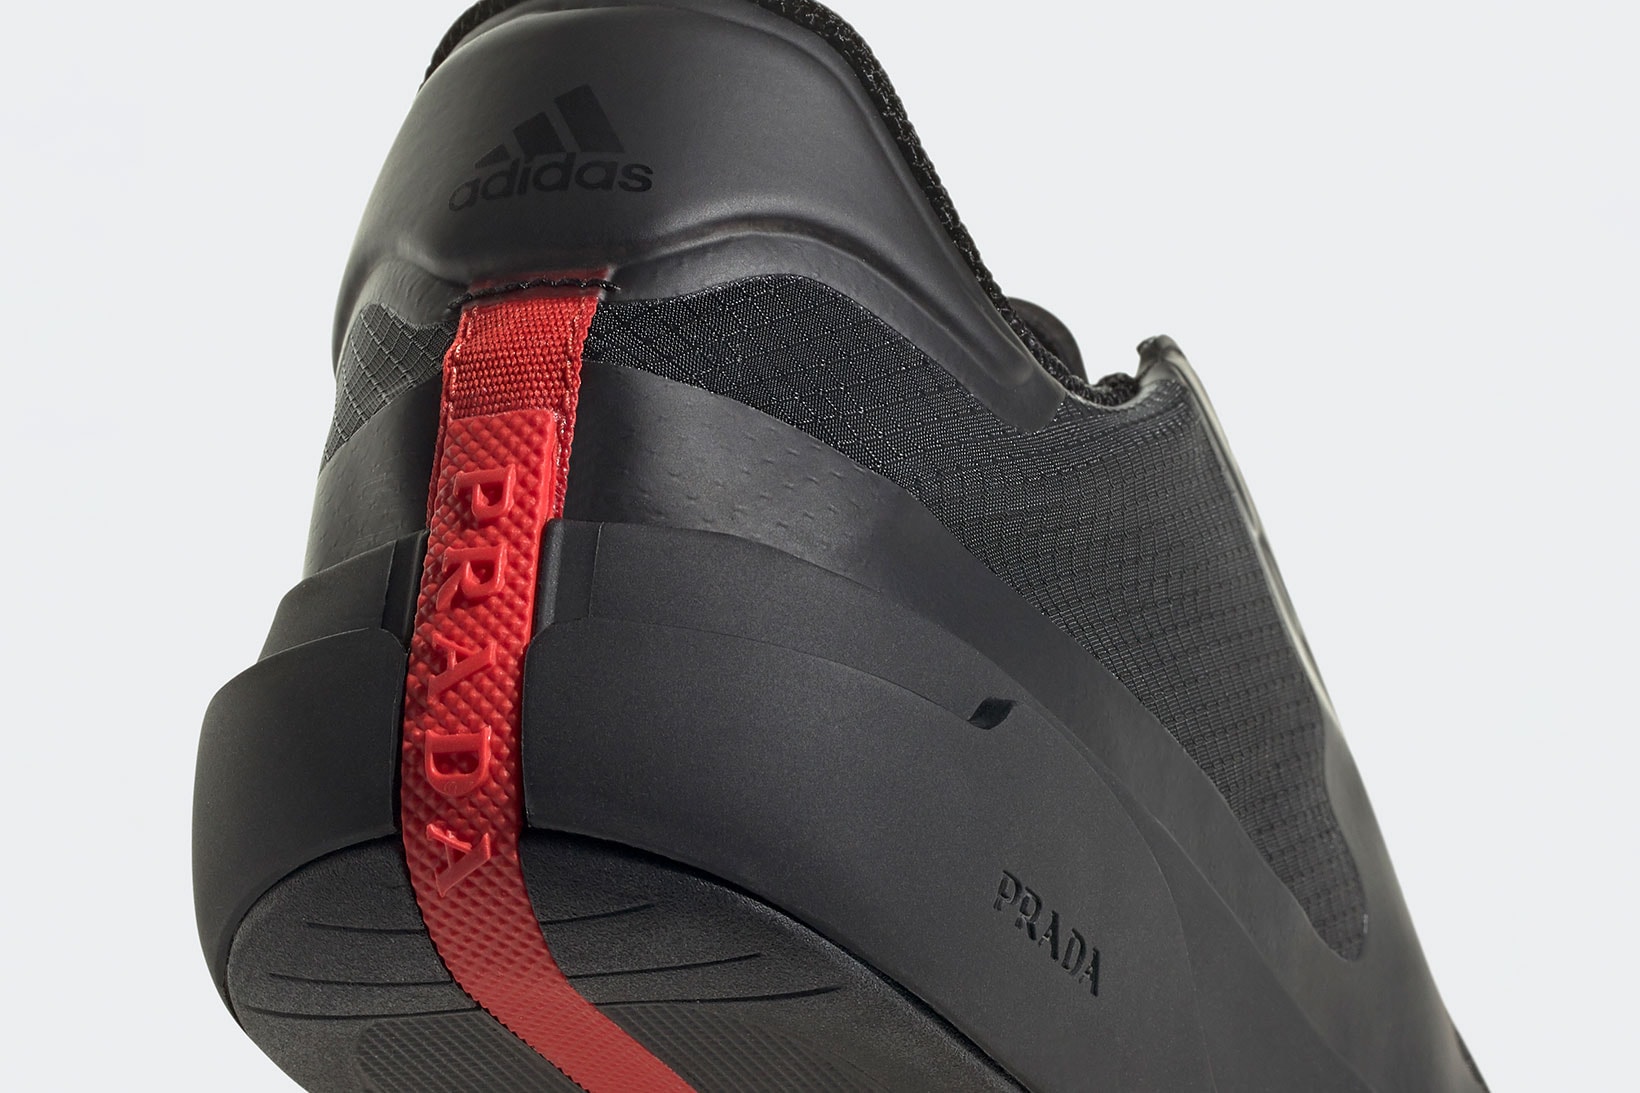 Prada adidas A+P LUNA ROSSA 21 Collaboration Core Black Heel Details